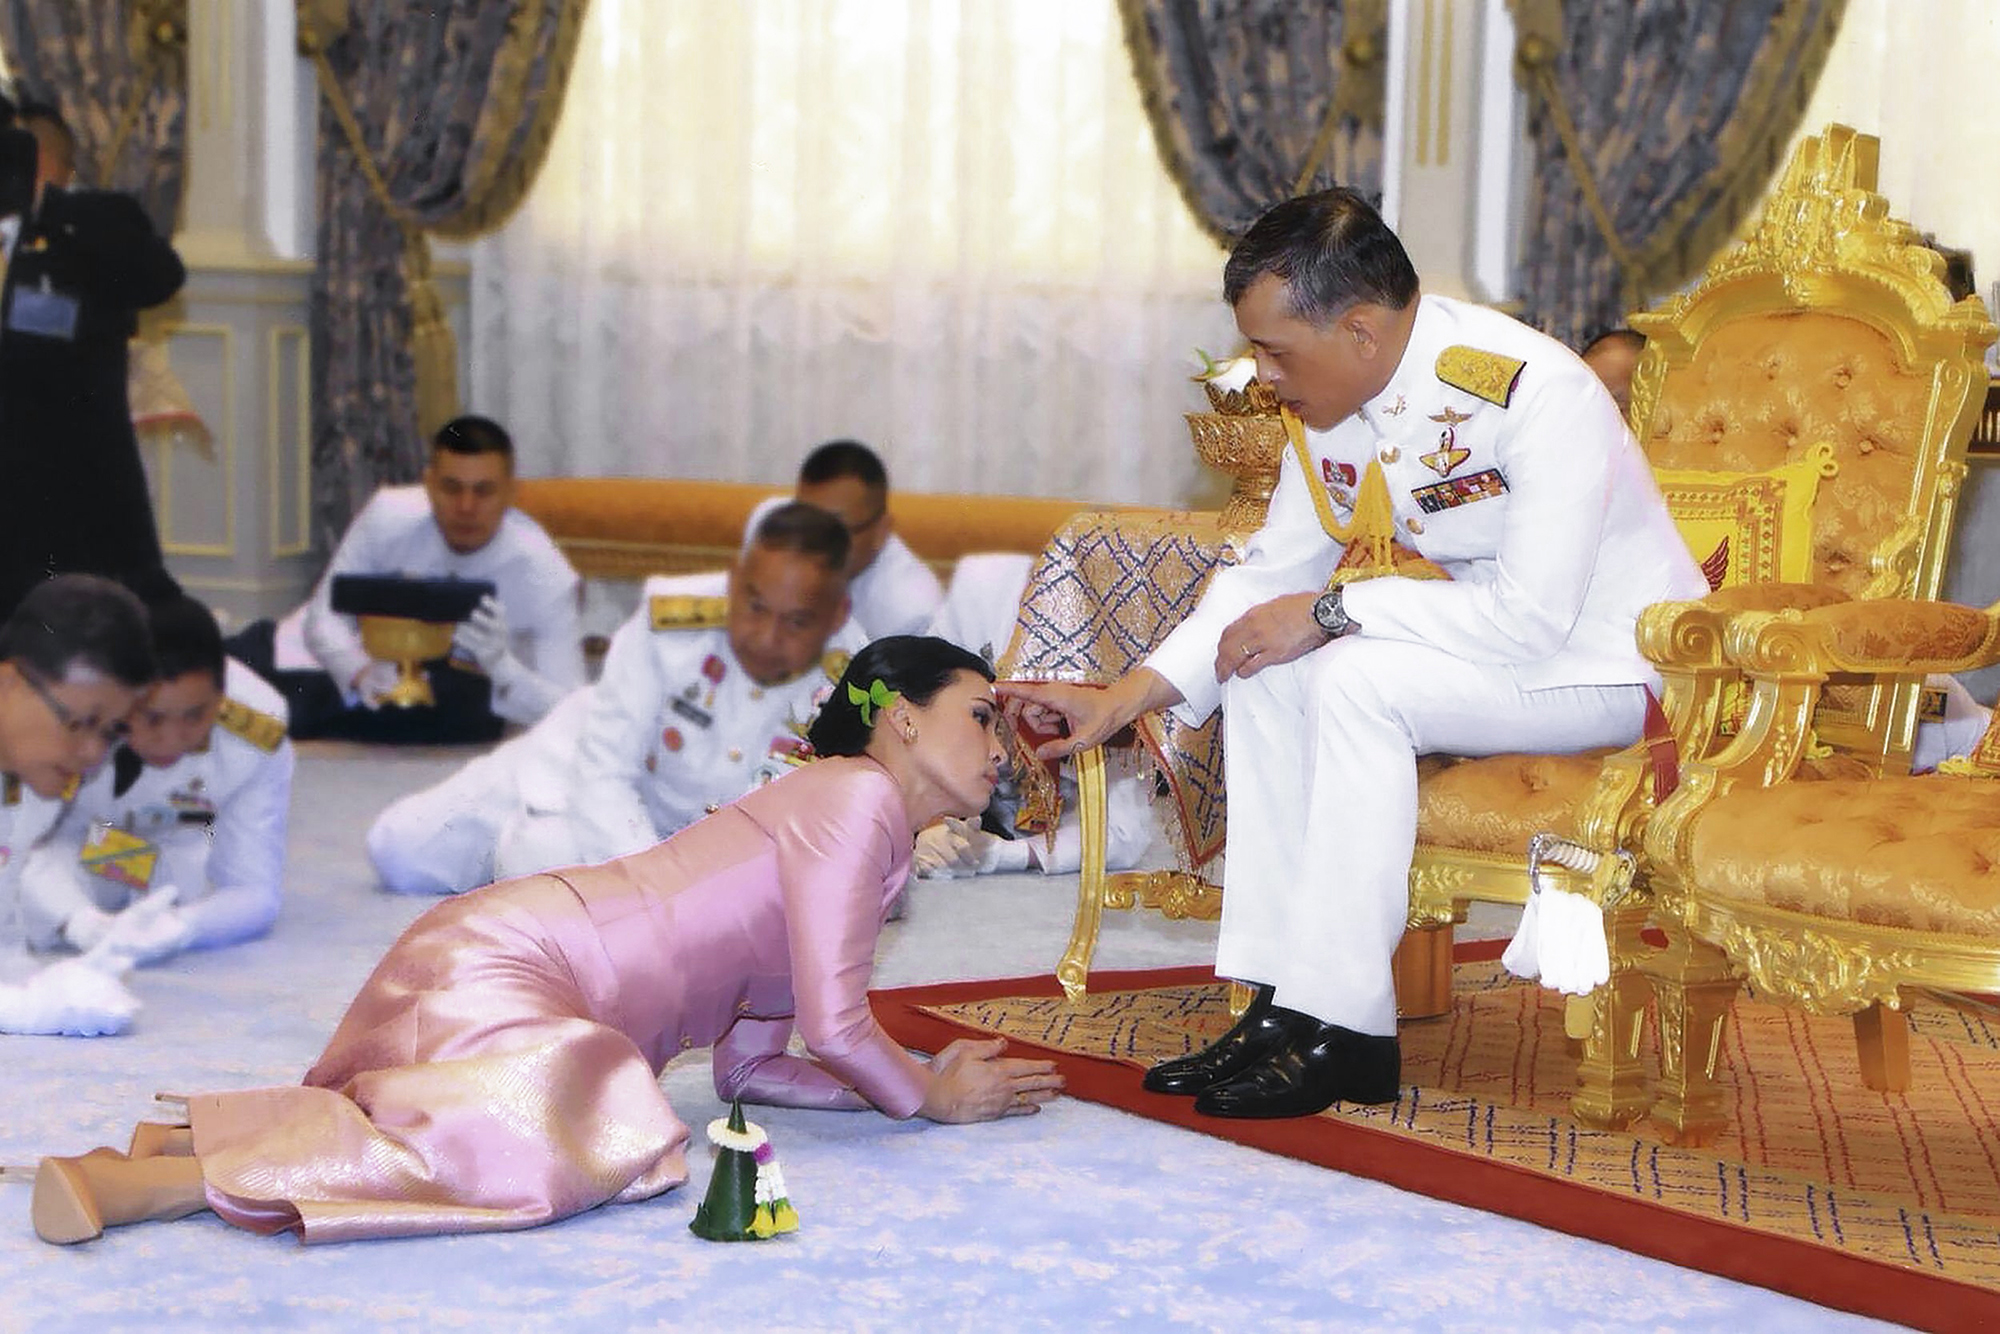 Le roi de Thaïlande confiné avec 20 femmes continue de faire polémique